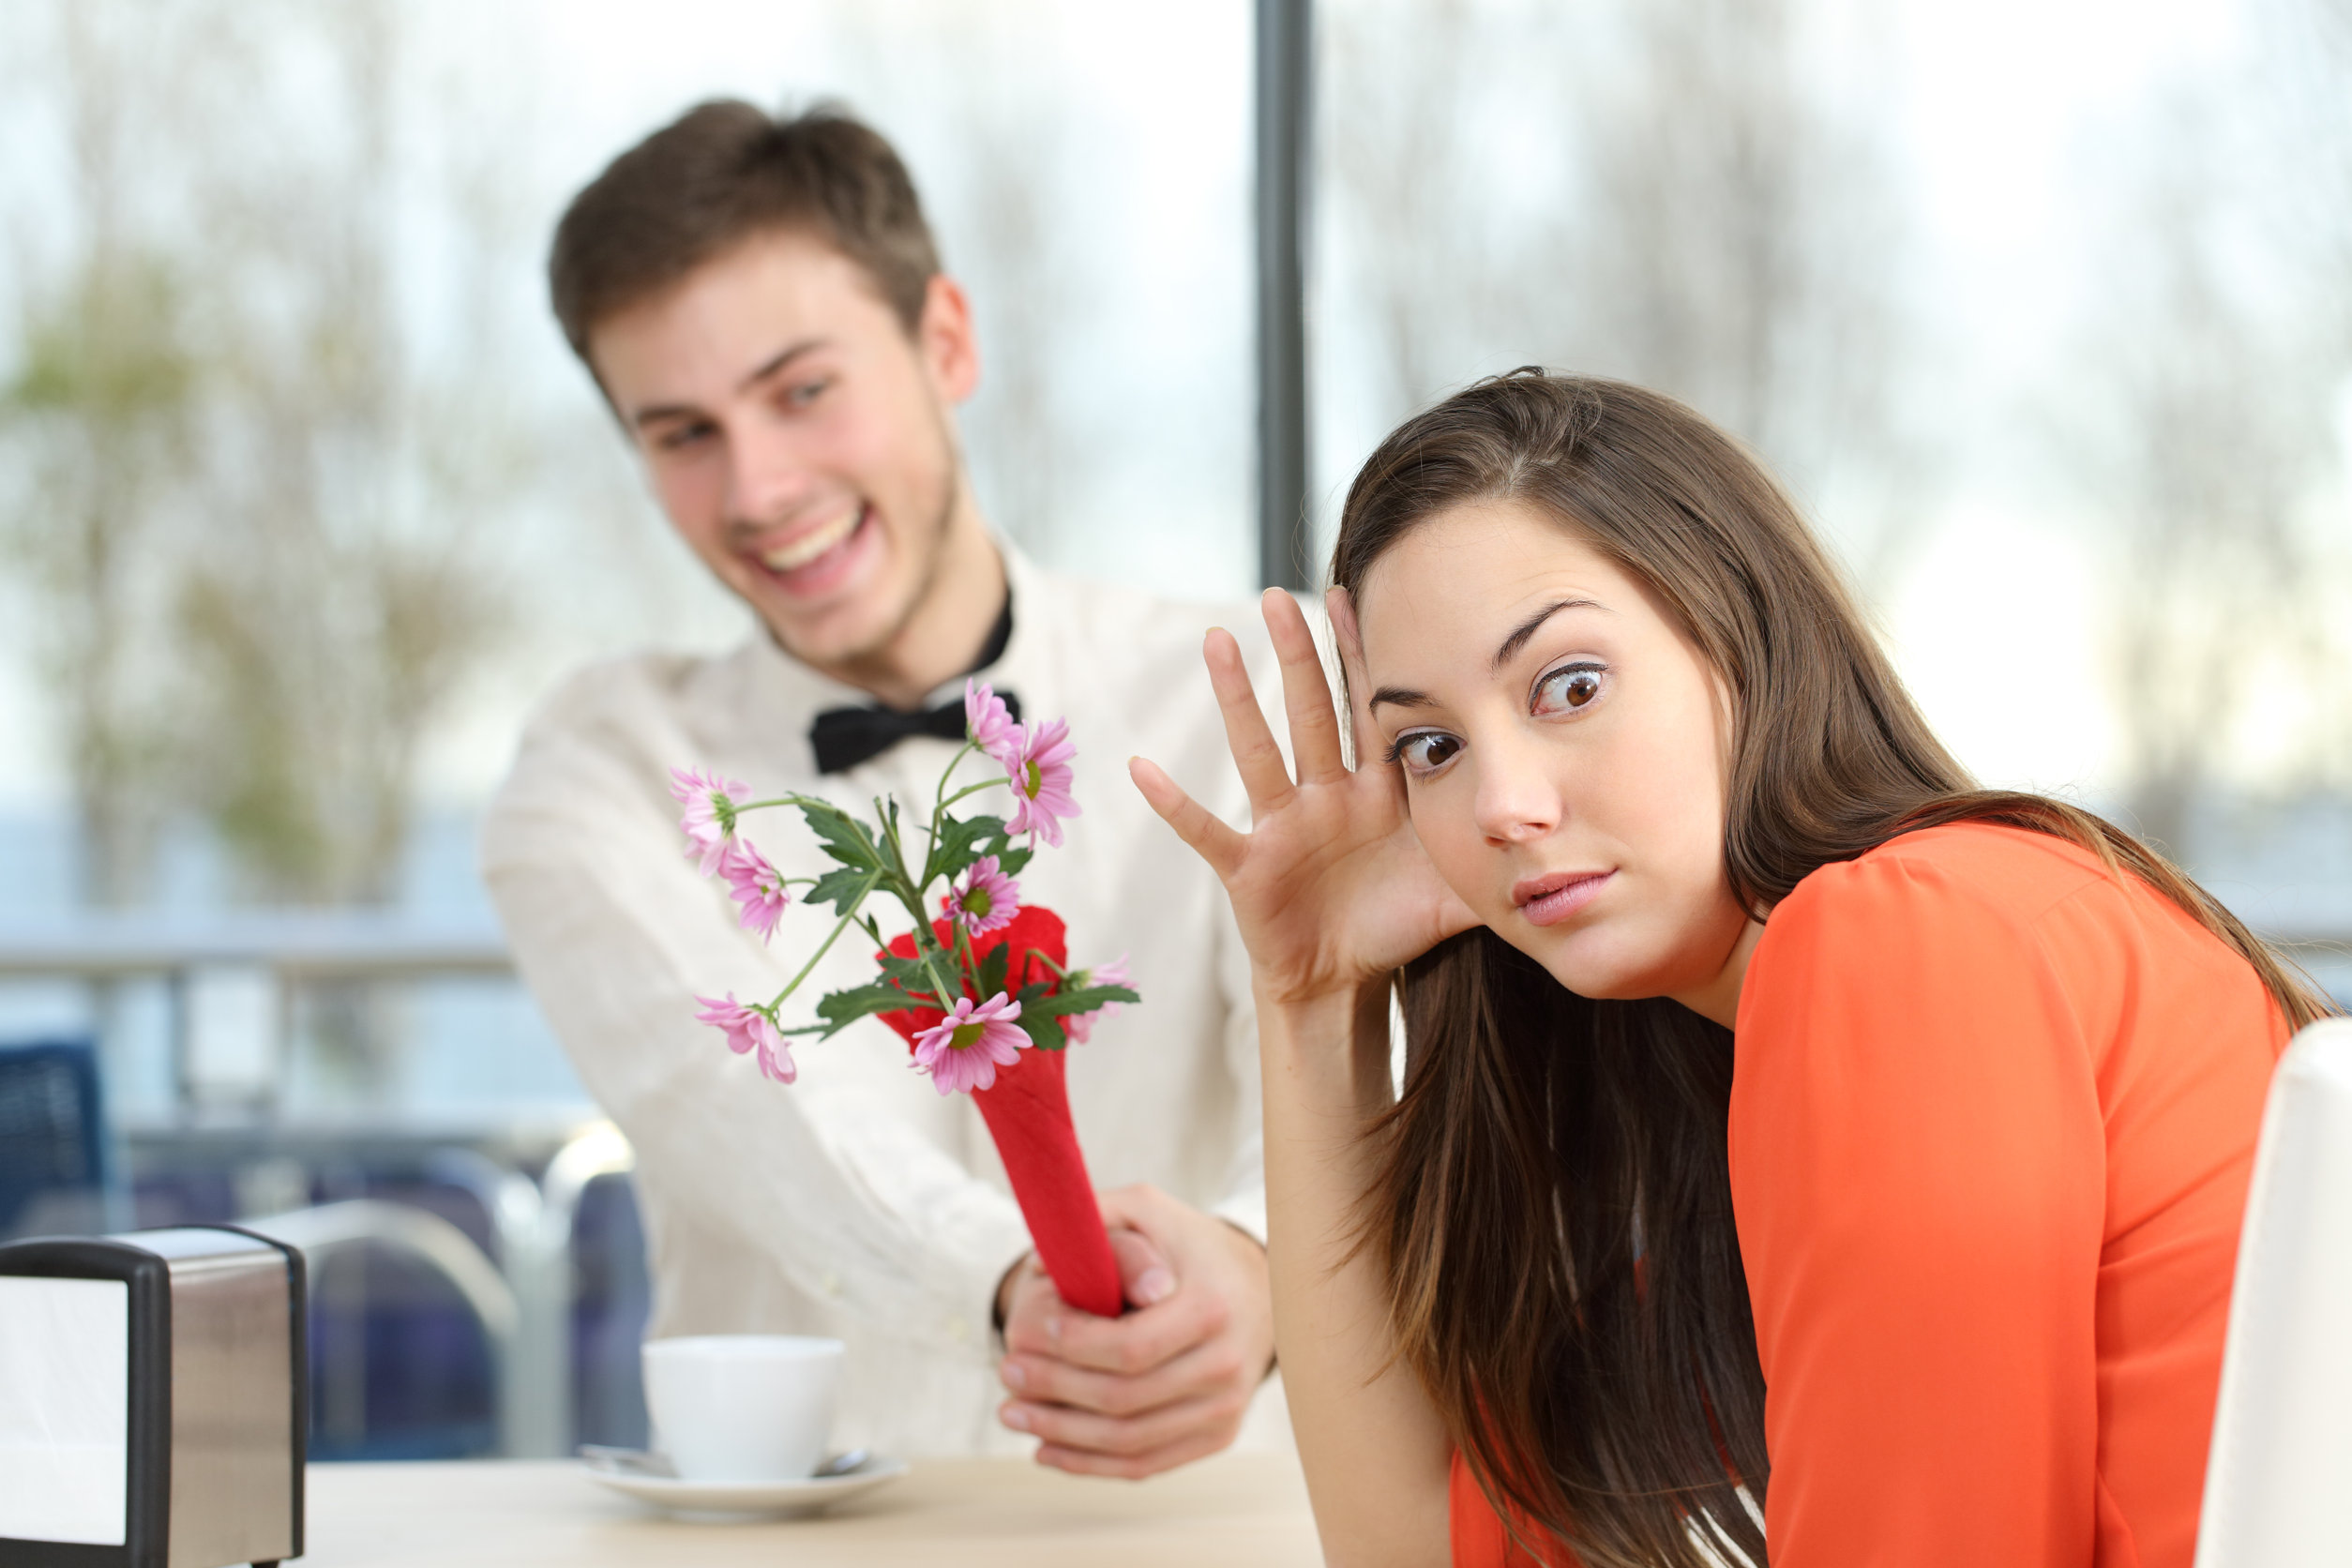 Poll: Wat vind jij grote afknappers op een eerste date? 18